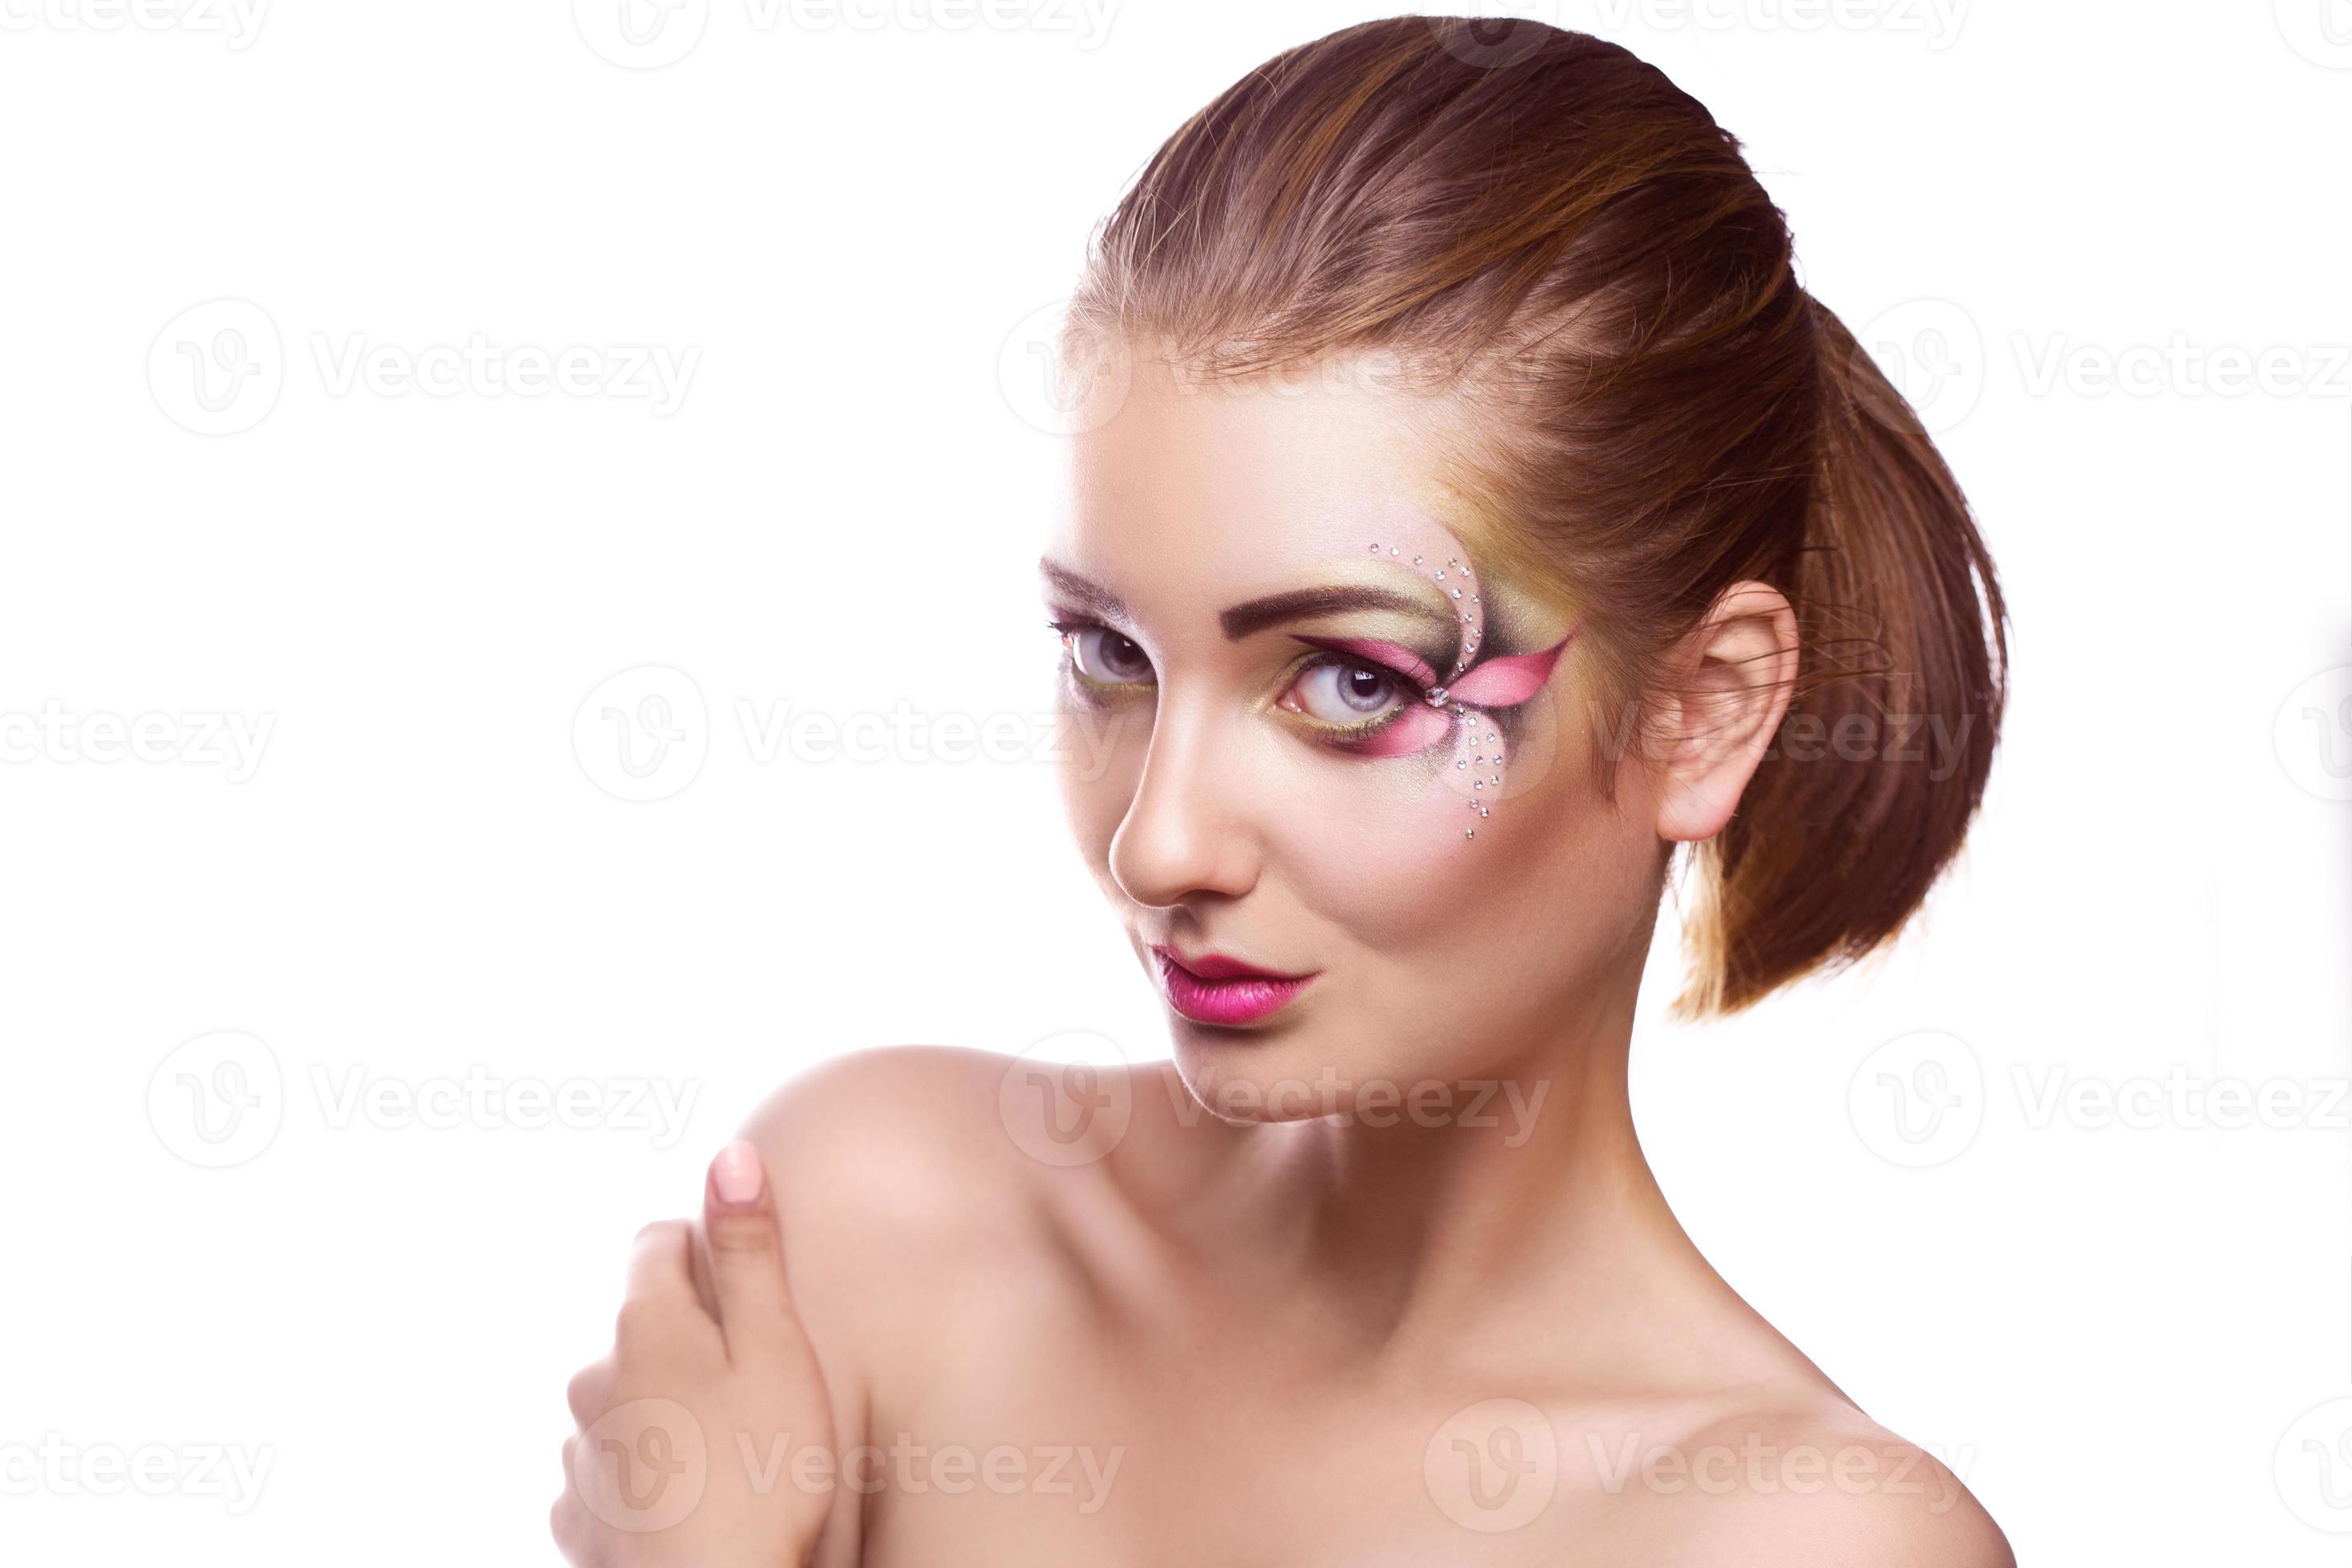 Perto do olho de uma mulher bonita com maquiagem multicolorida e